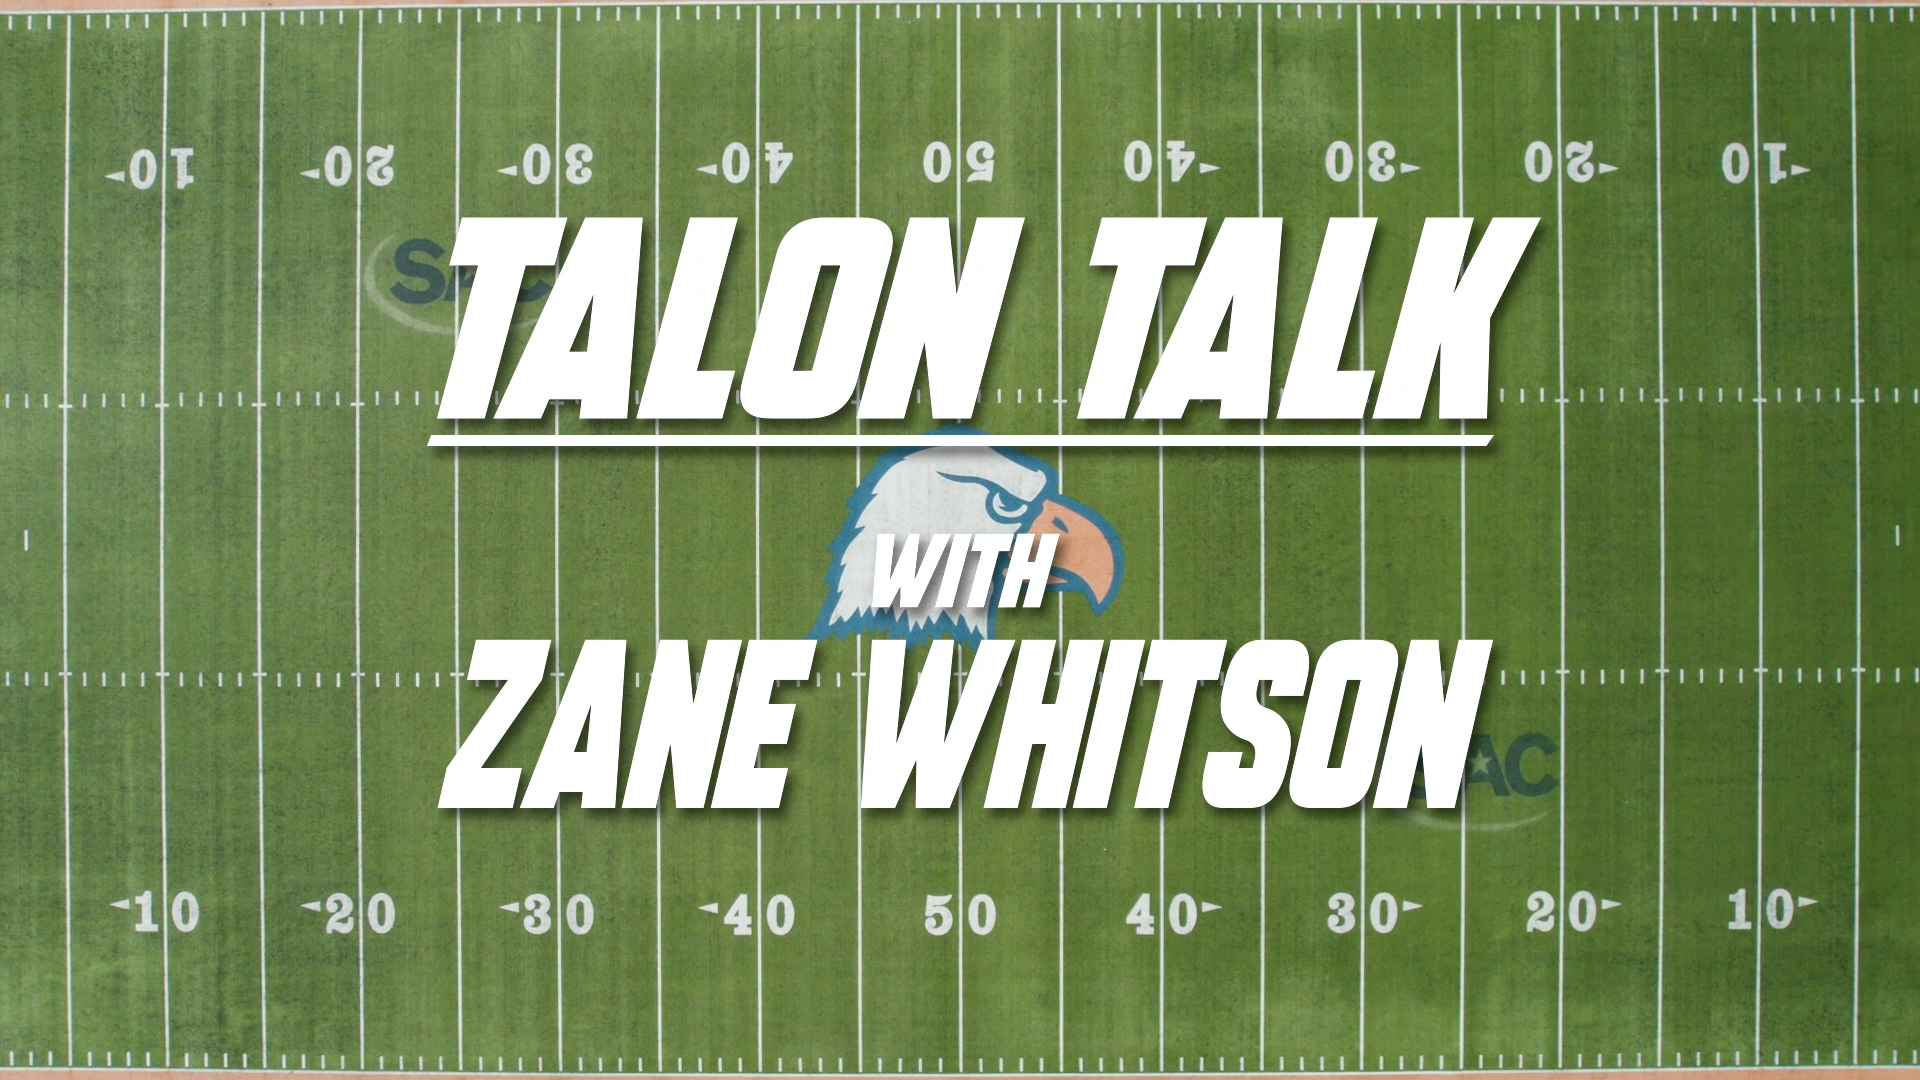 Talon Talk with Zane Whitson